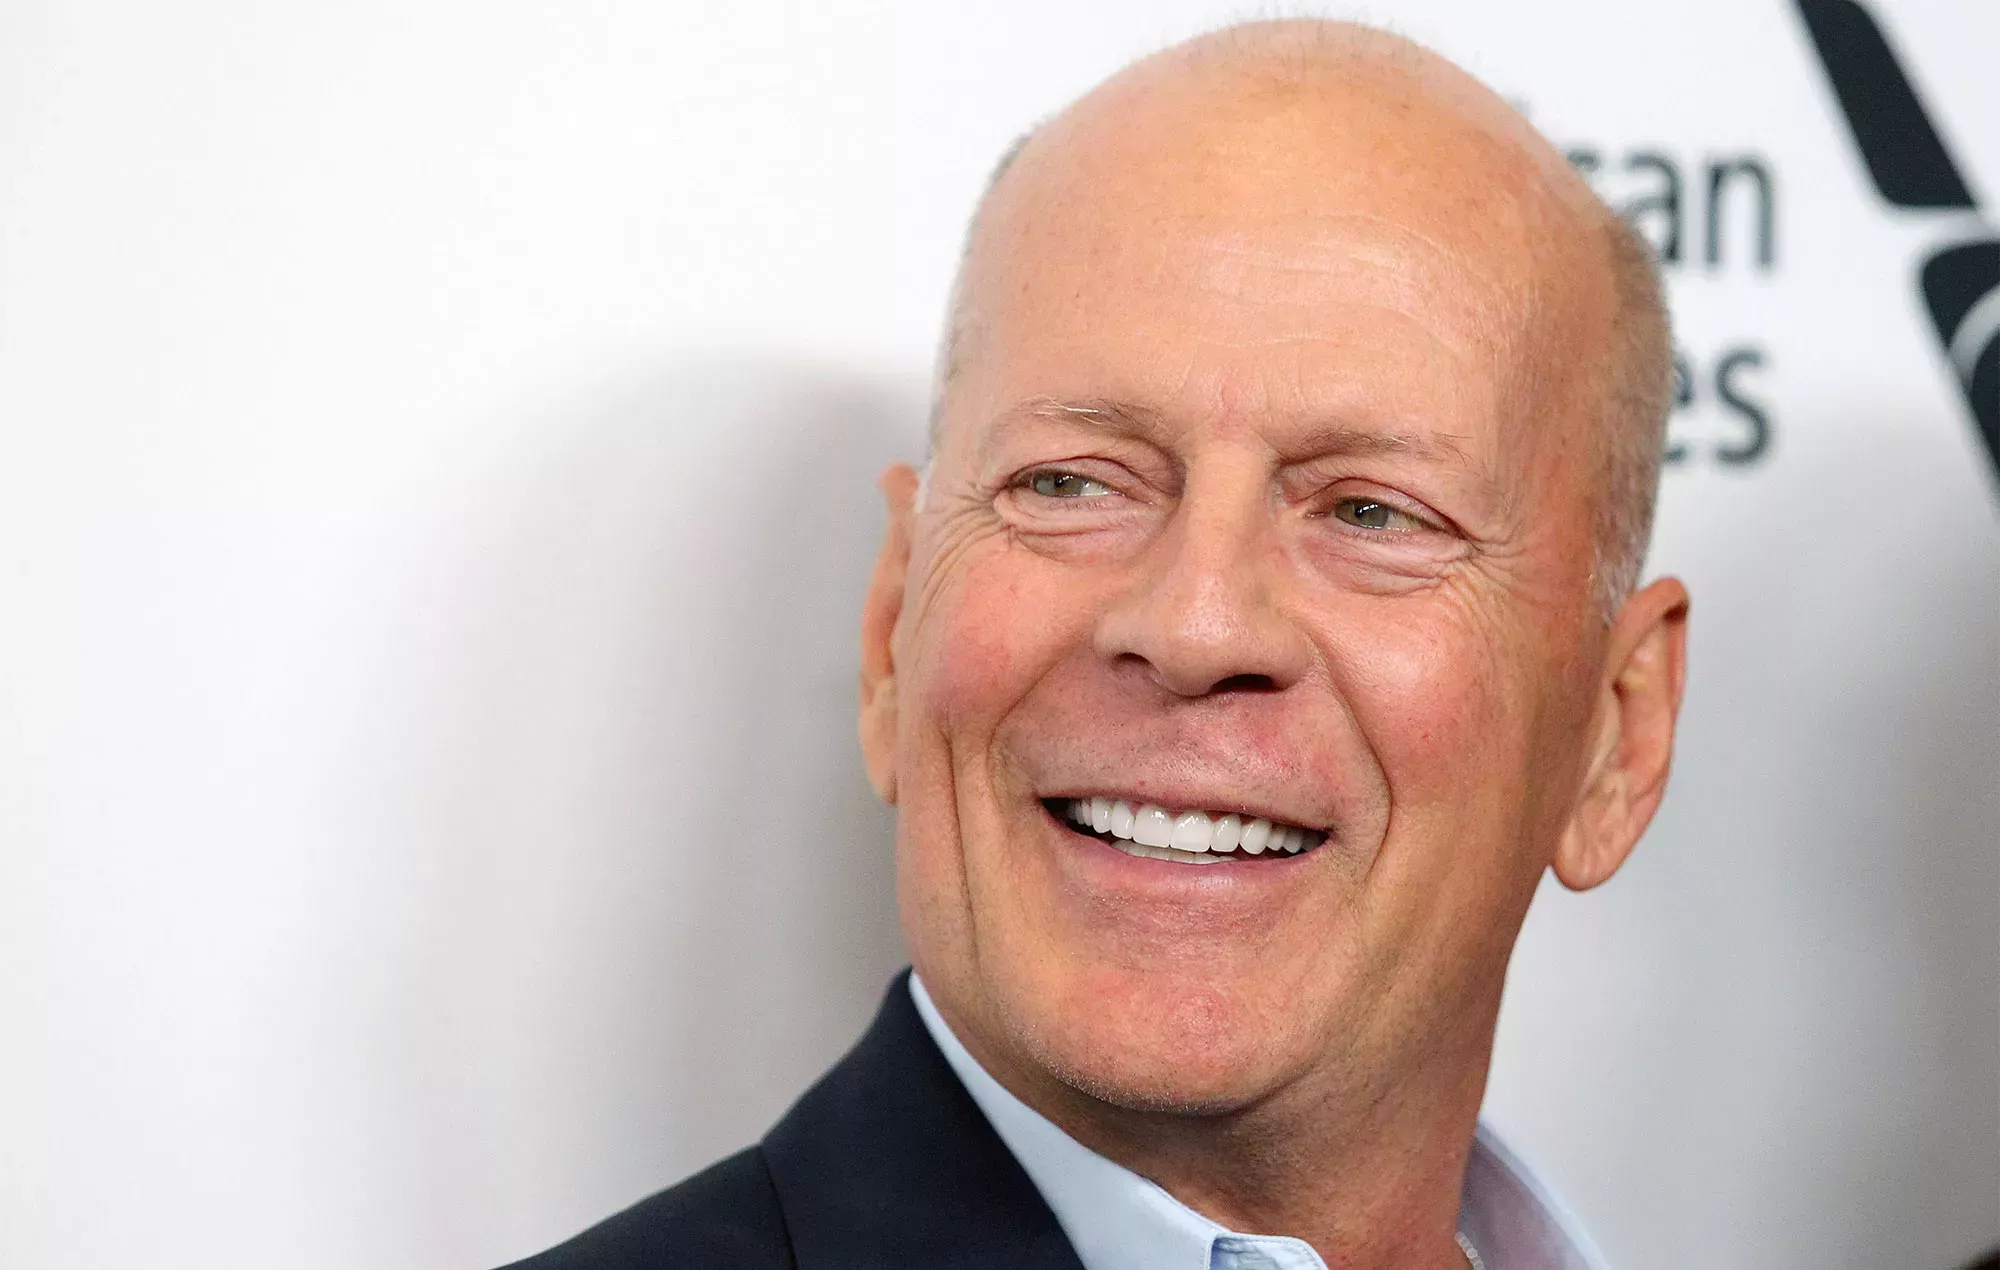 La afasia de Bruce Willis ha evolucionado a demencia frontotemporal, según su ex mujer Demi Moore